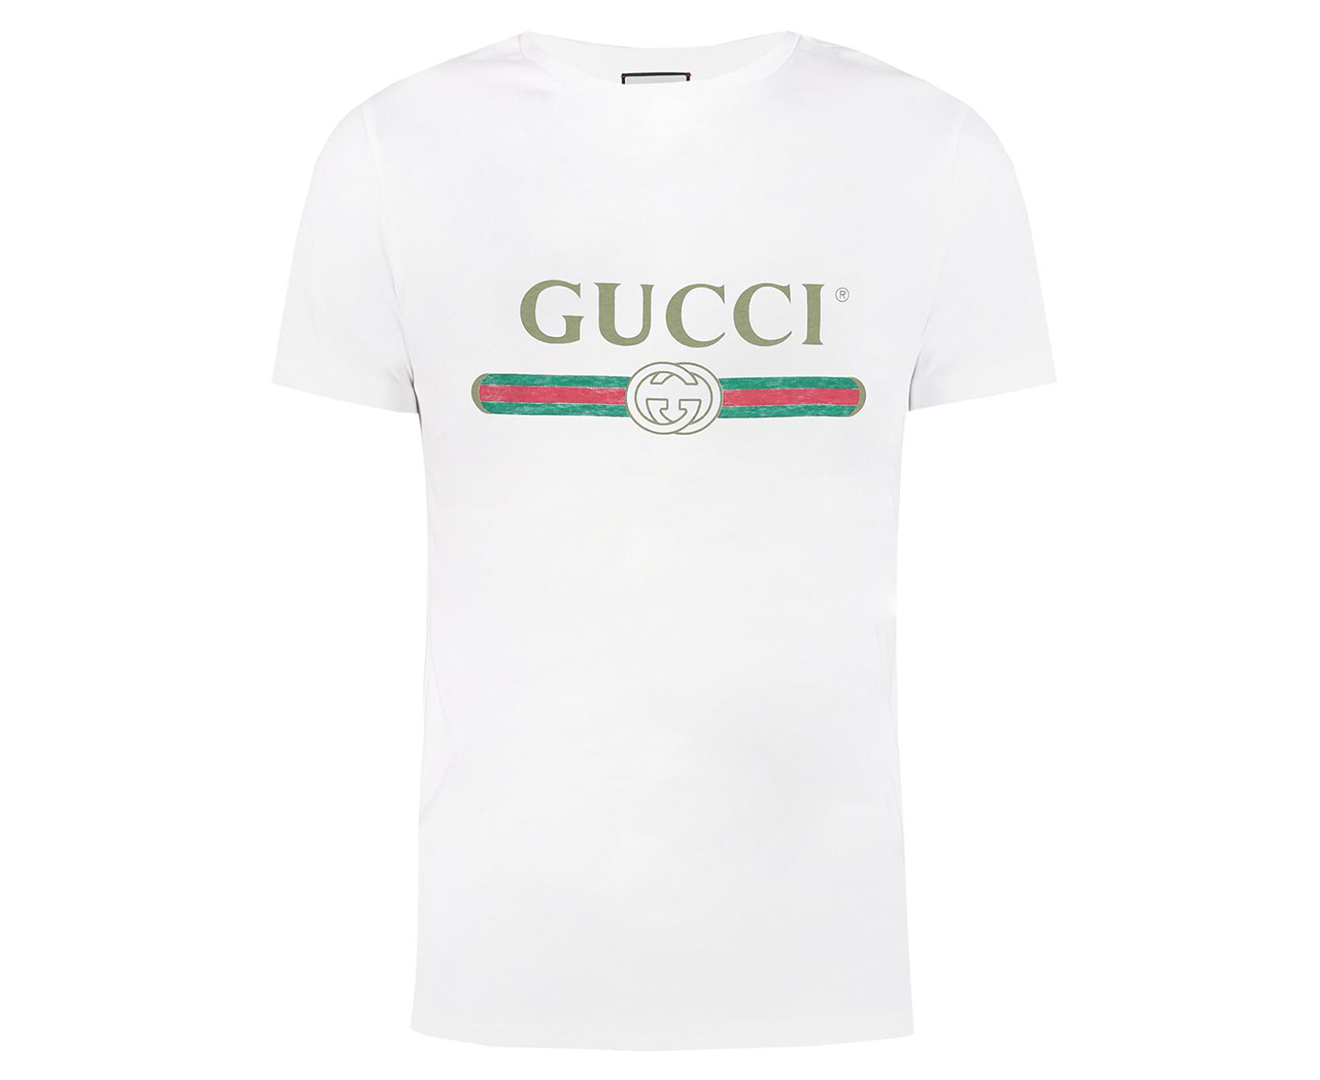 Gucci Men's Oversize Washed Tee / T-Shirt / Tshirt w/ Gucci Logo ...